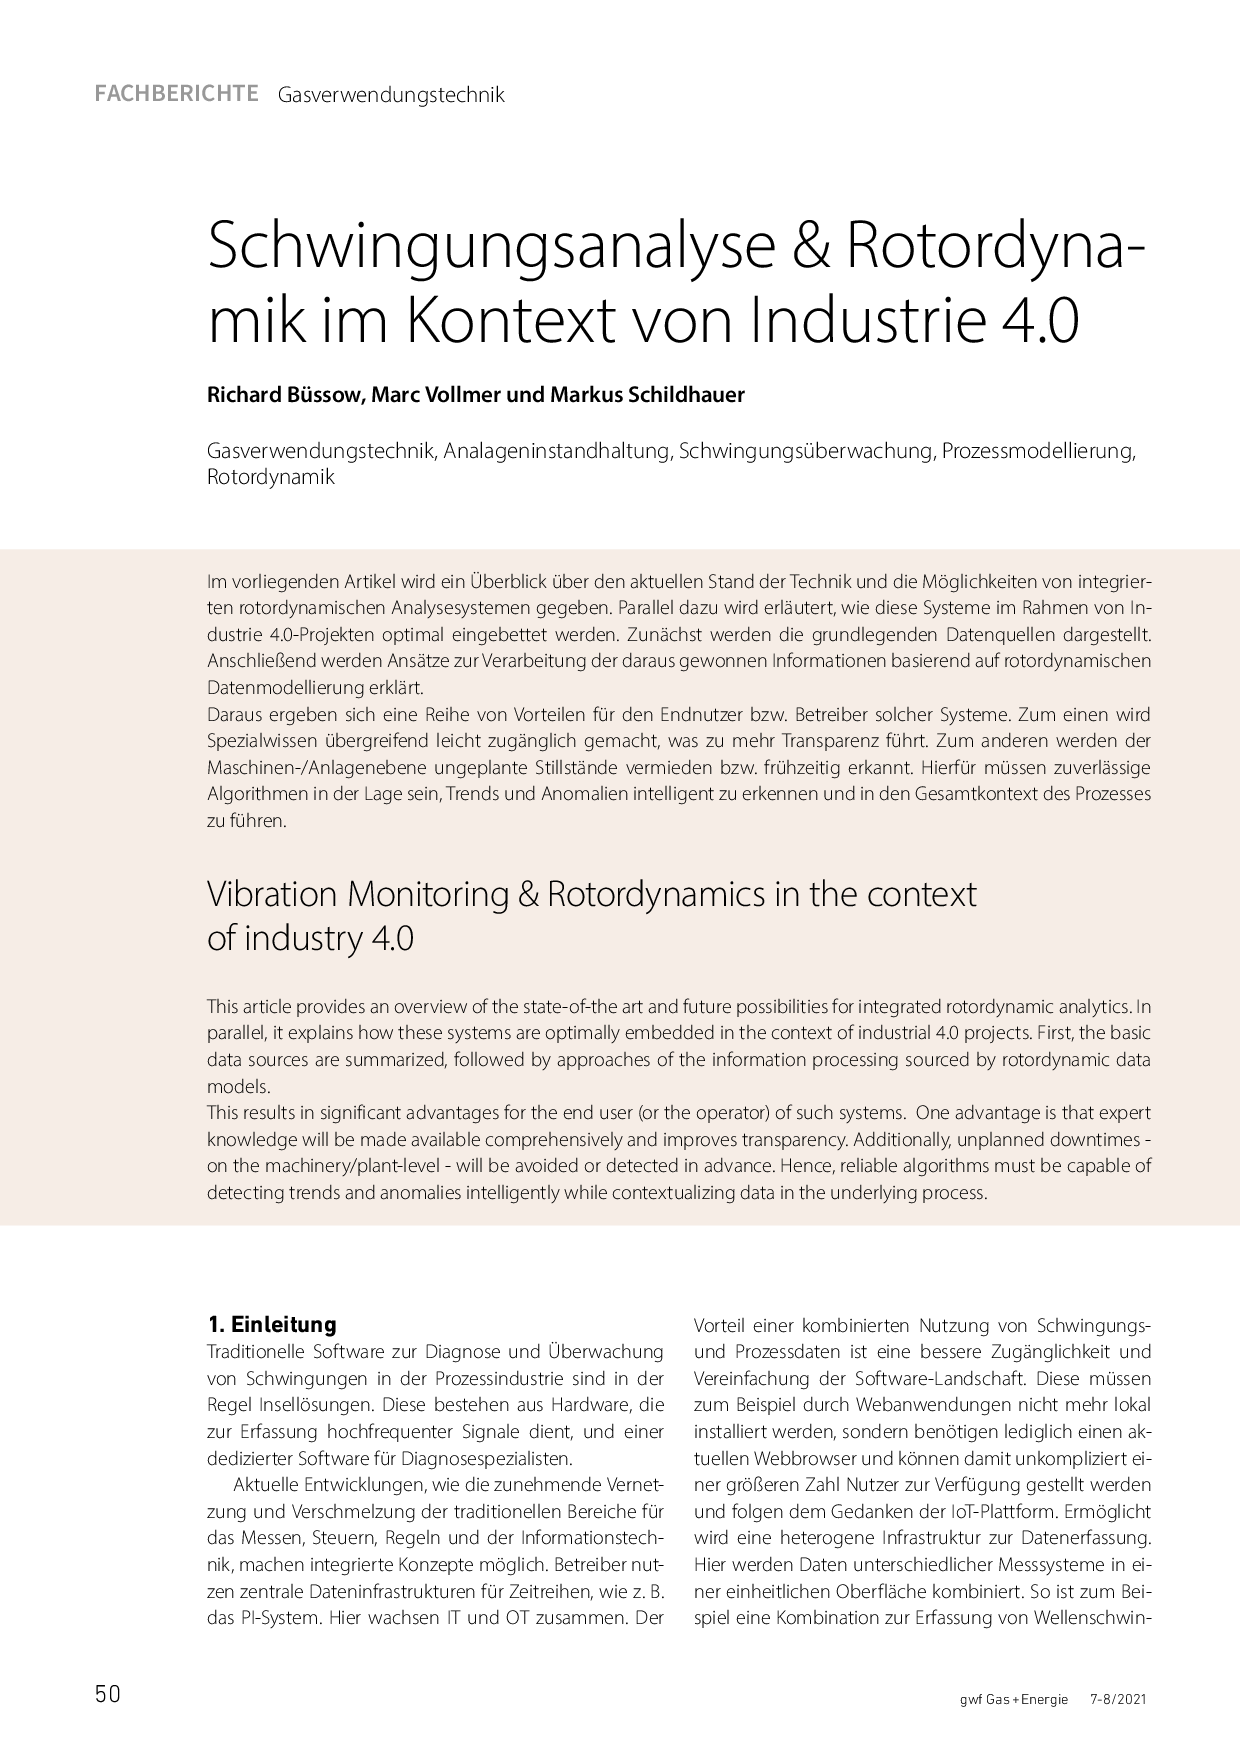 Schwingungsanalyse & Rotordynamik im Kontext von Industrie 4.0